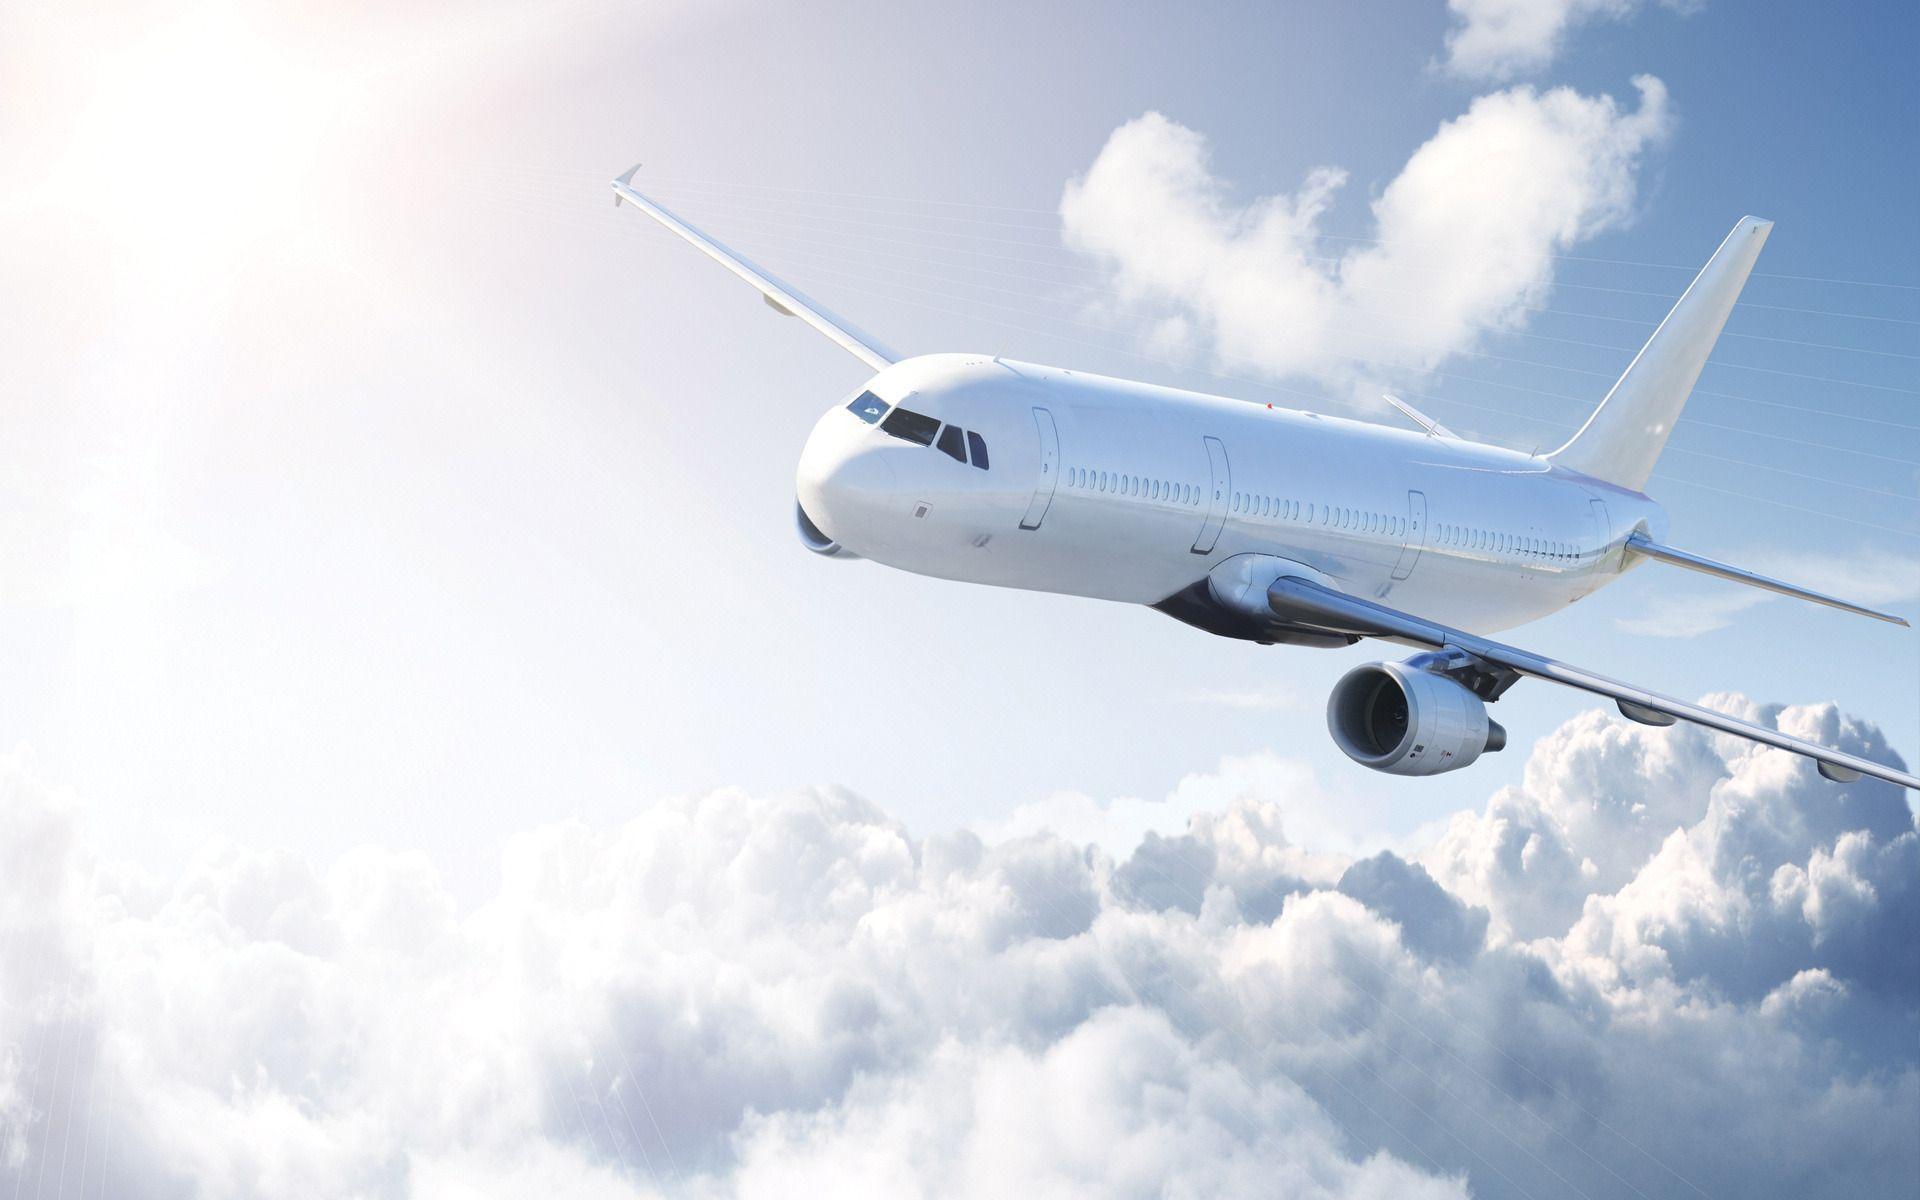 Самолет в небе: фото | Airplane wallpaper, Aircraft, Fear of flying